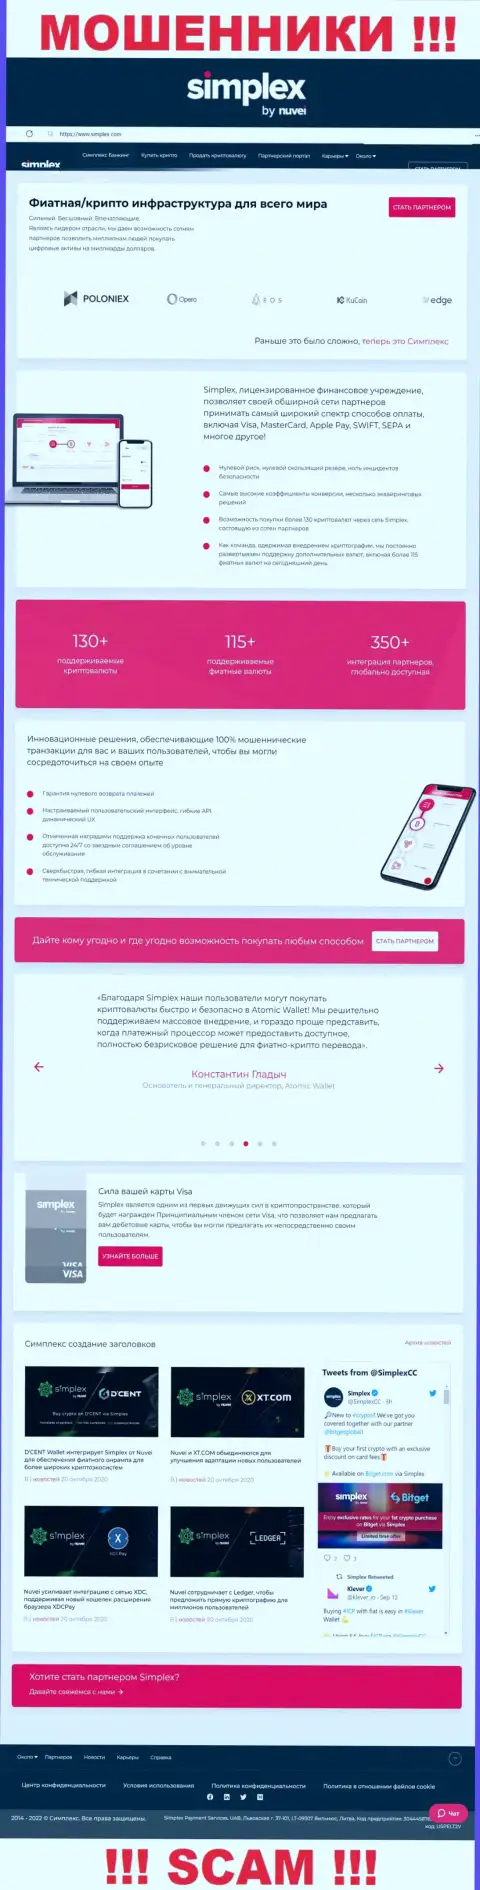 Вид официальной веб-страницы мошеннической организации Симплекс Ком